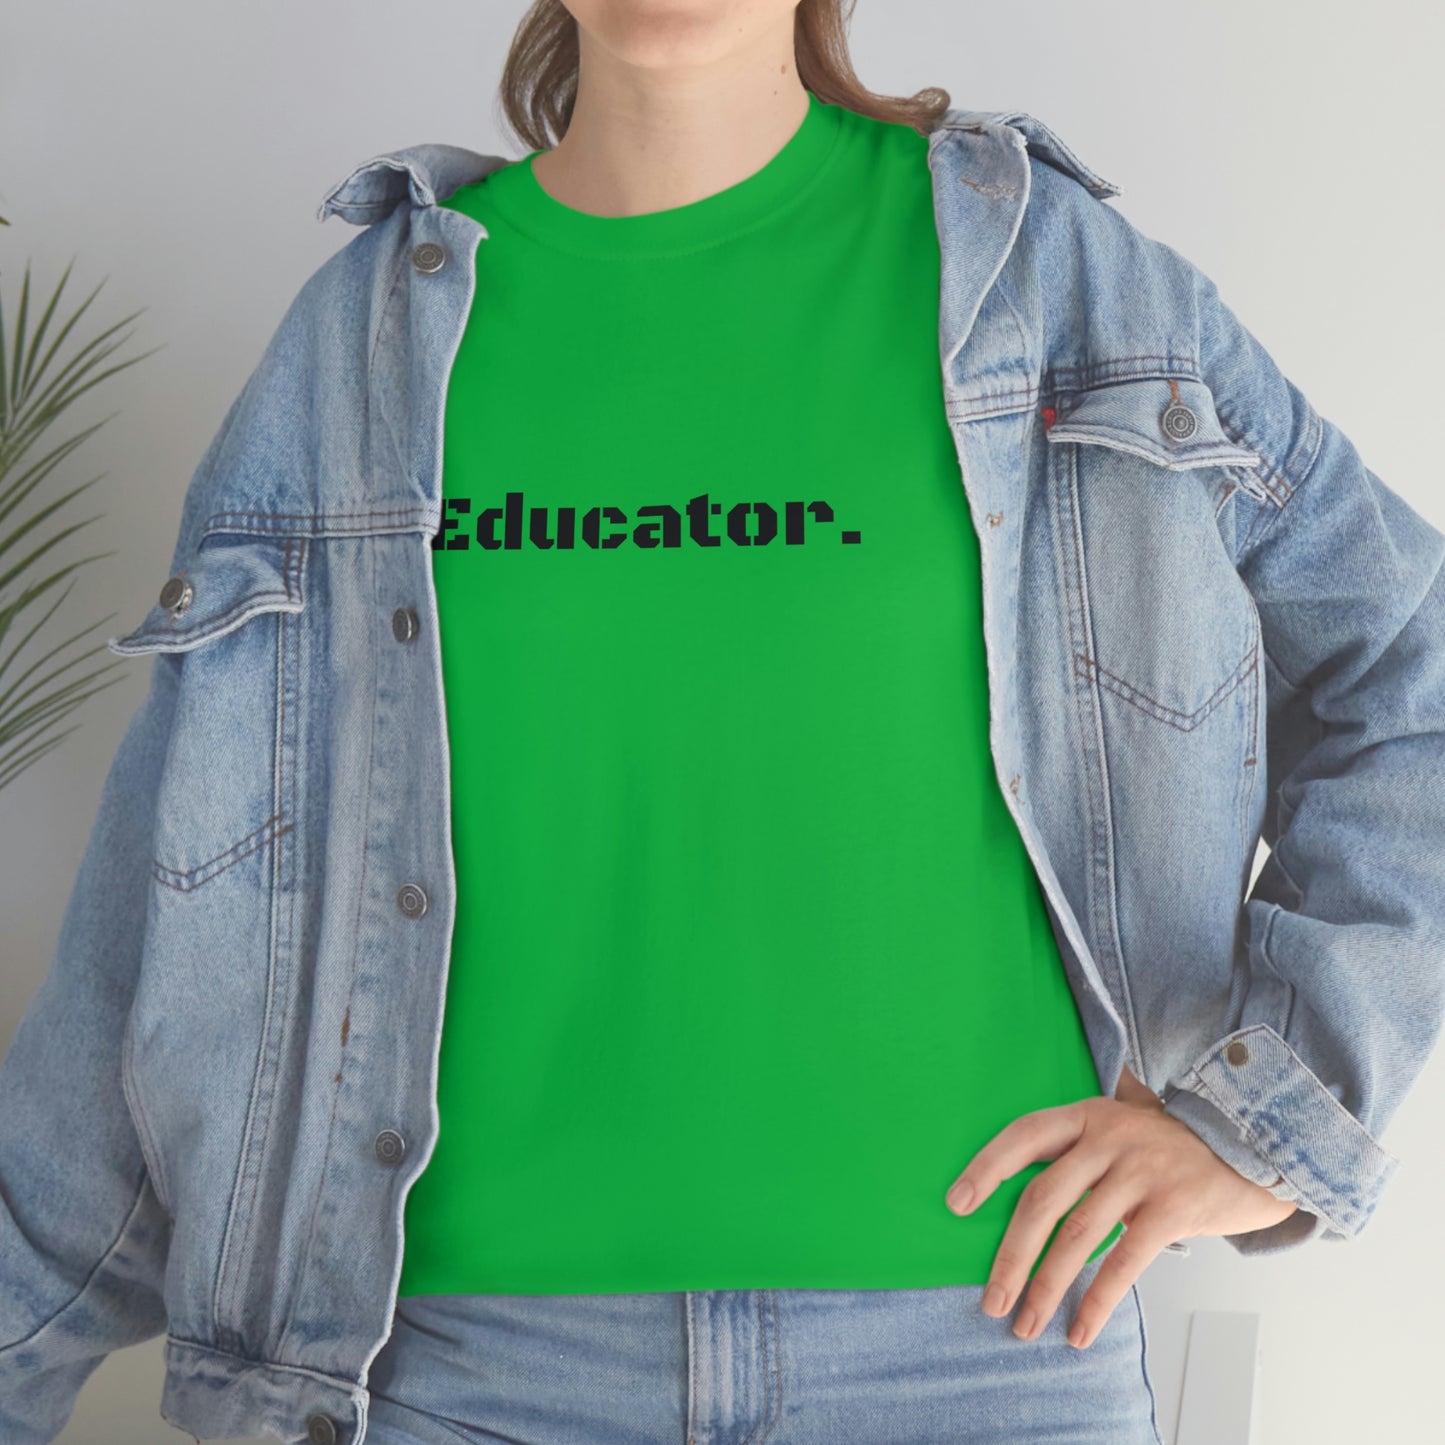 Educator. - Heavy Cotton Tee